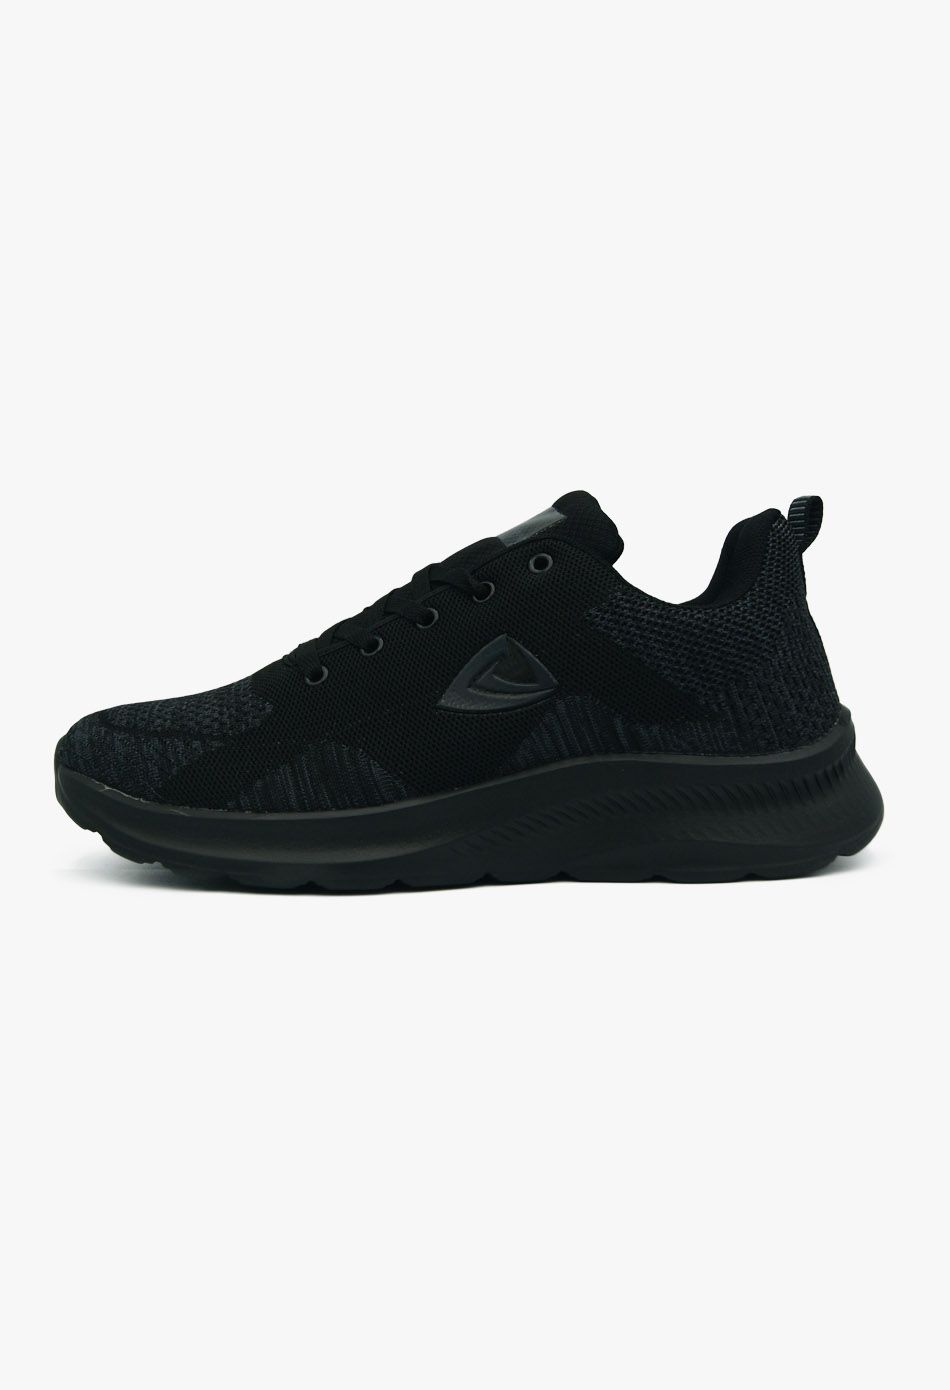 Ανδρικά Αθλητικά Παπούτσια για Τρέξιμο Μαύρο / 153A-black ΑΘΛΗΤΙΚΑ & SNEAKERS joya.gr